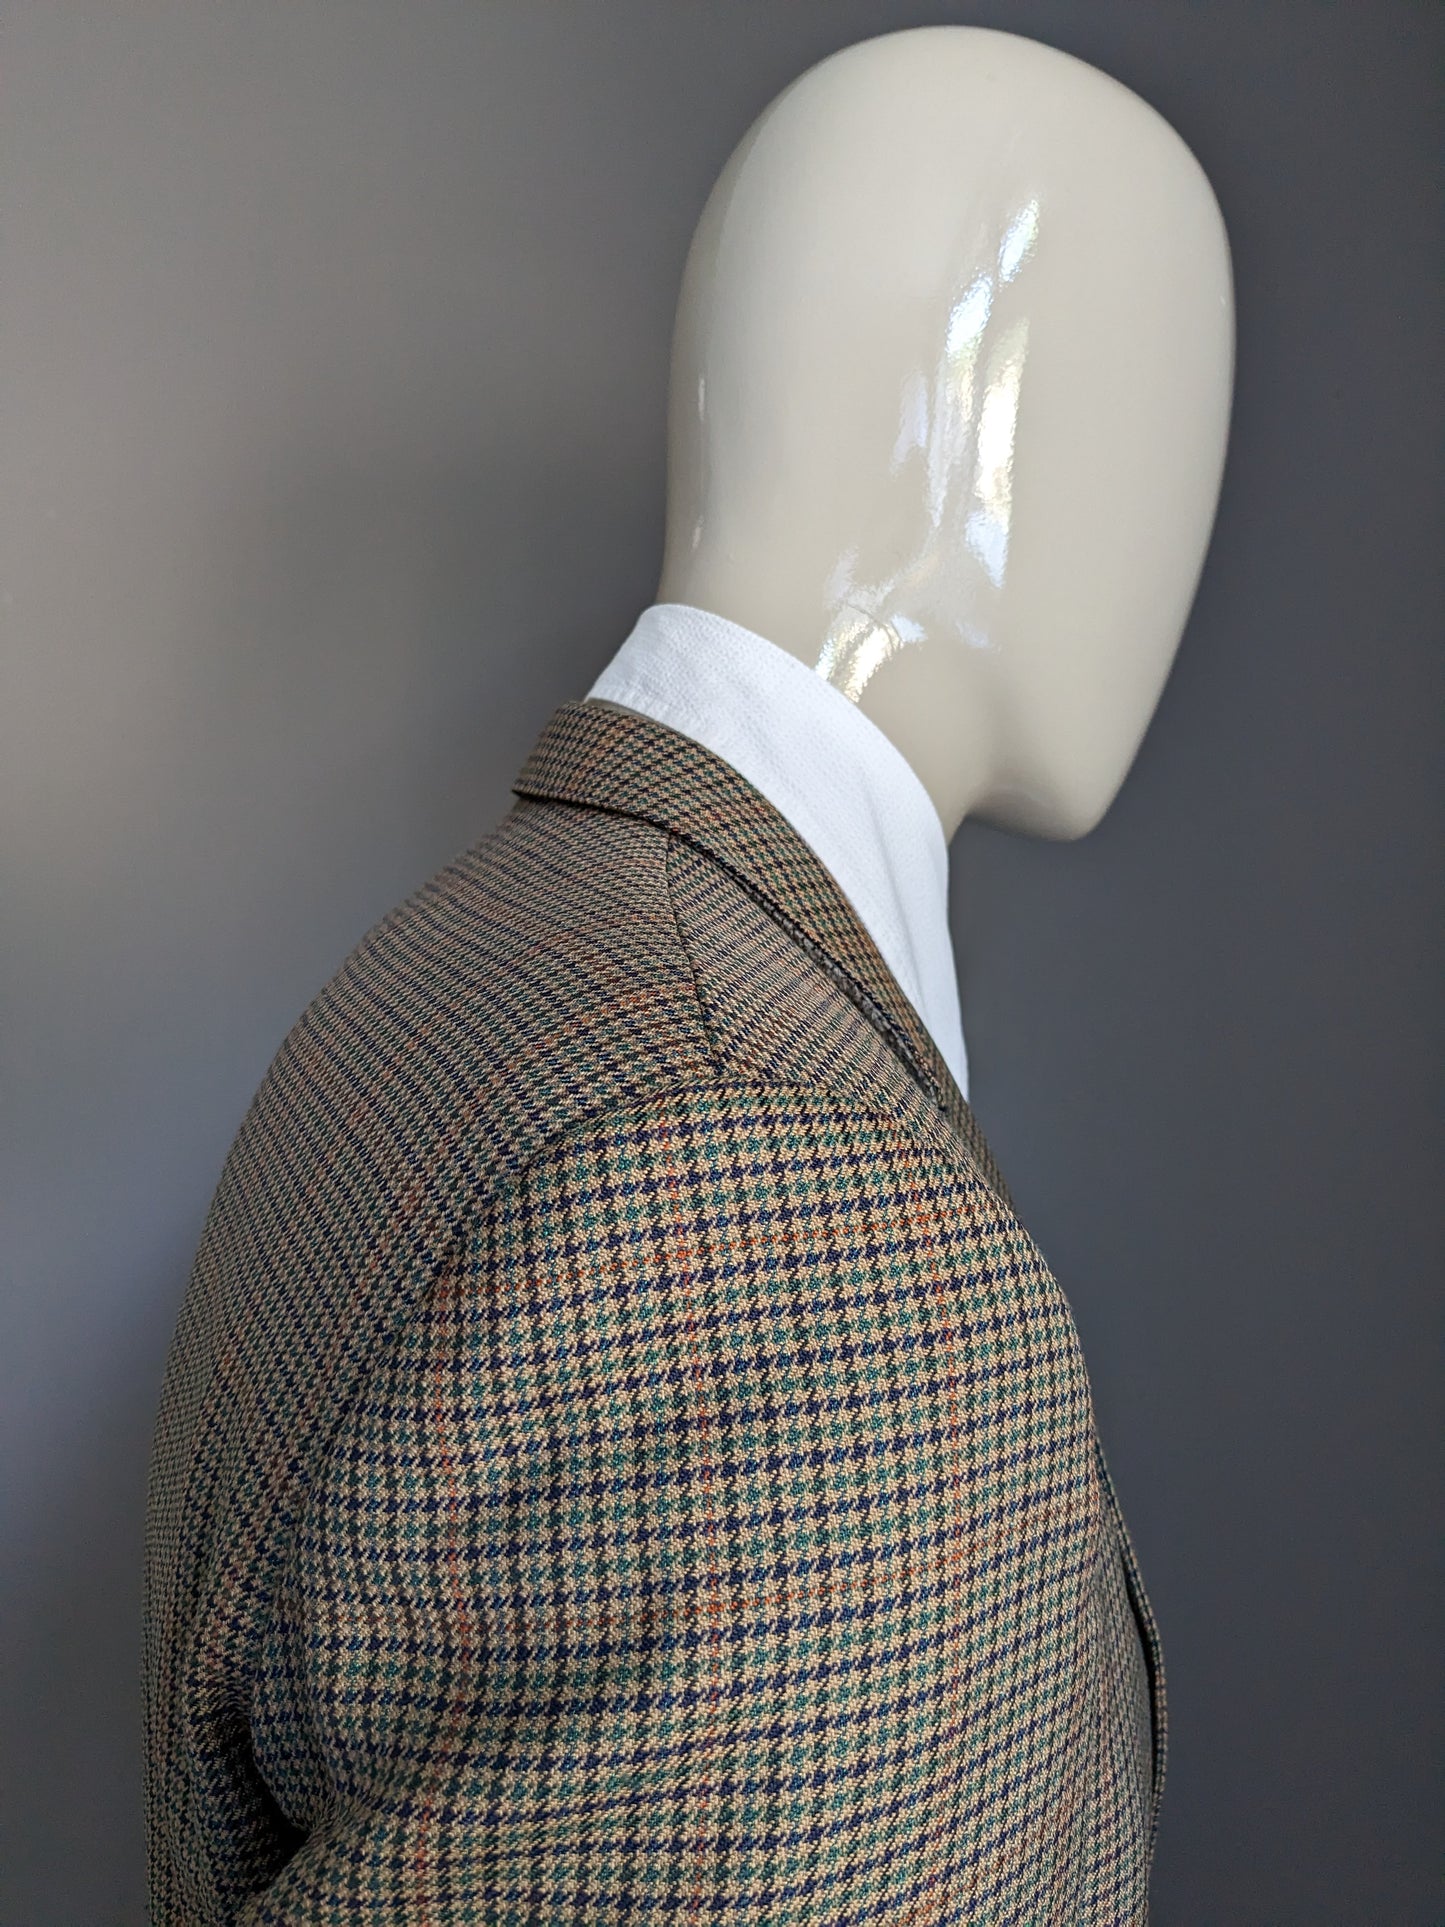 Giacca di lana Hardy John G. Motivo marrone con striscia arancione verde blu. Dimensione 52 / L.